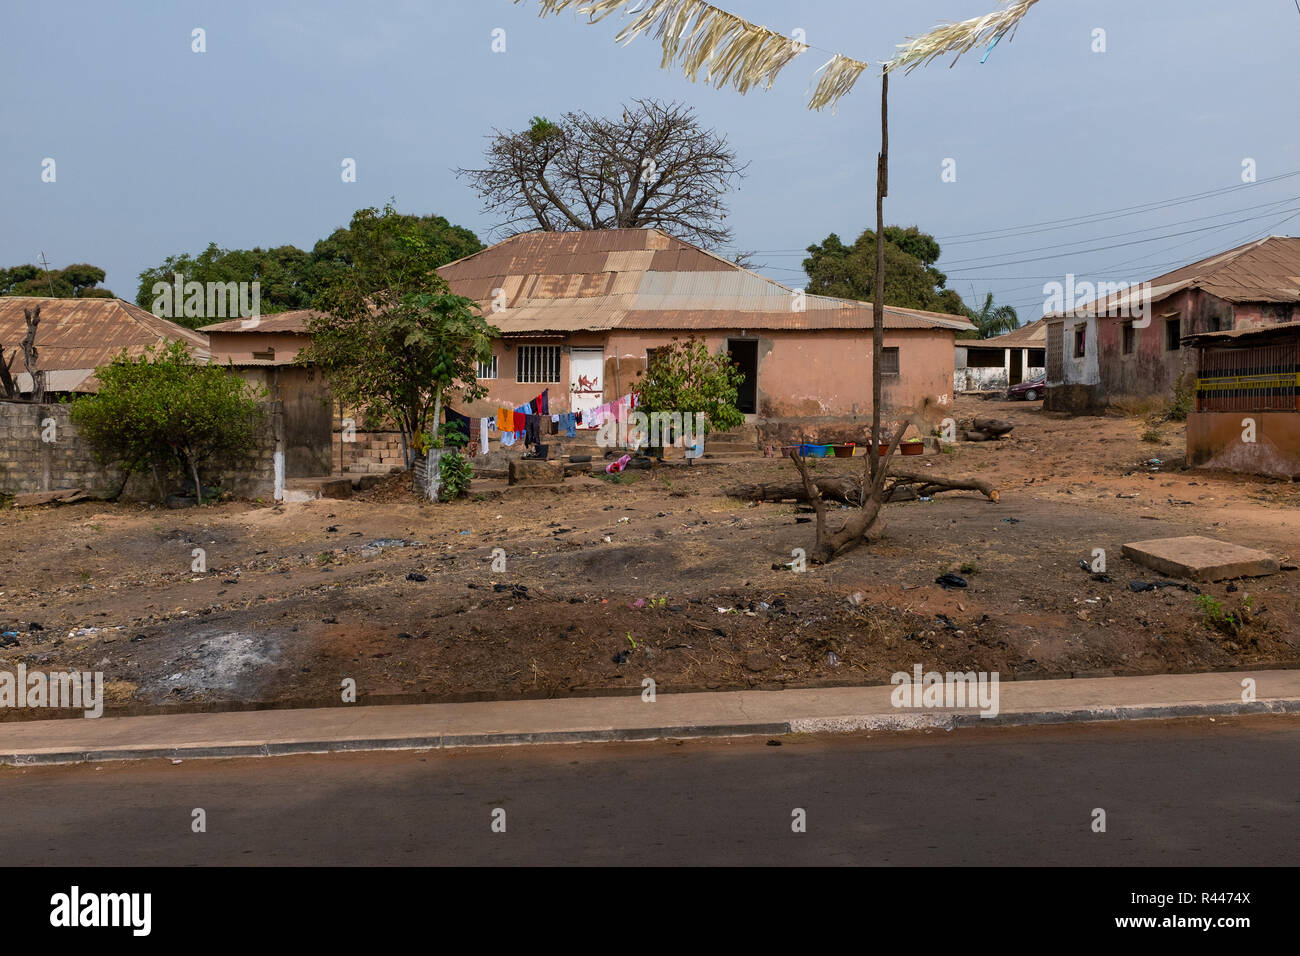 Haus in der Bandim Nachbarschaft in der Stadt Bissau, Guinea-Bissau. Guinea-bissau ist eines der ärmsten Länder der Welt. Stockfoto